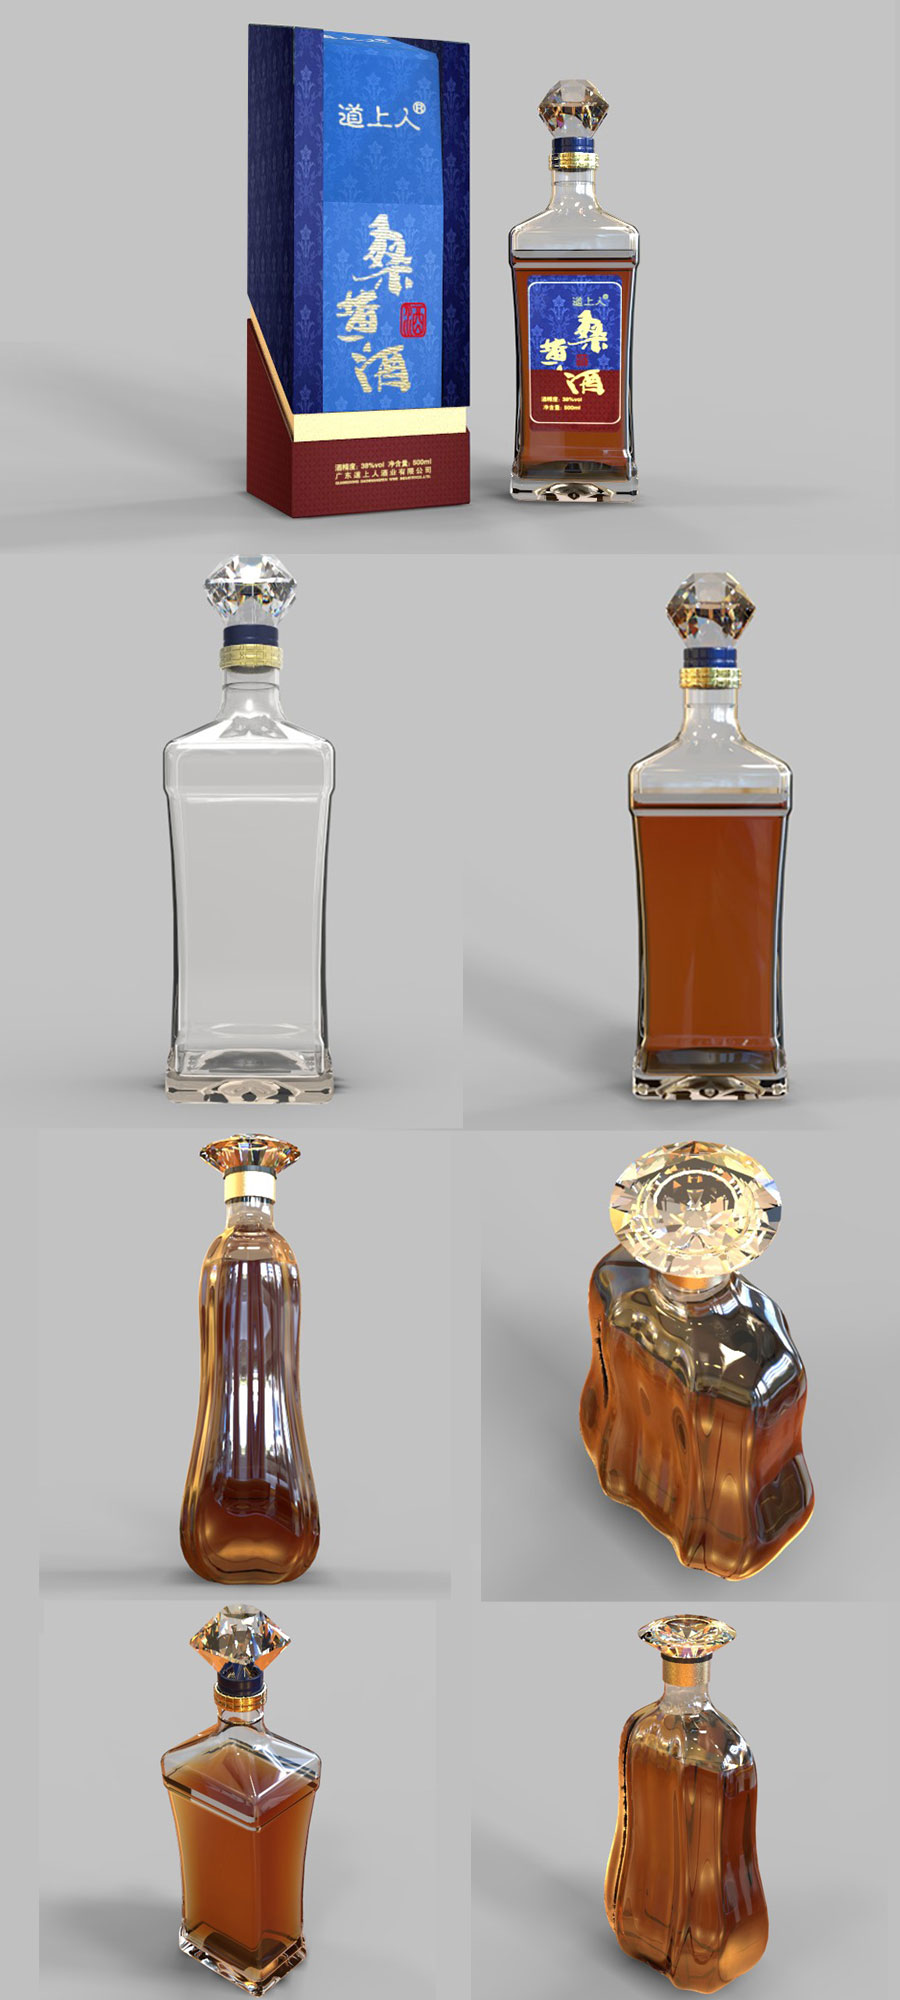 酒瓶的三视图和立体图图片